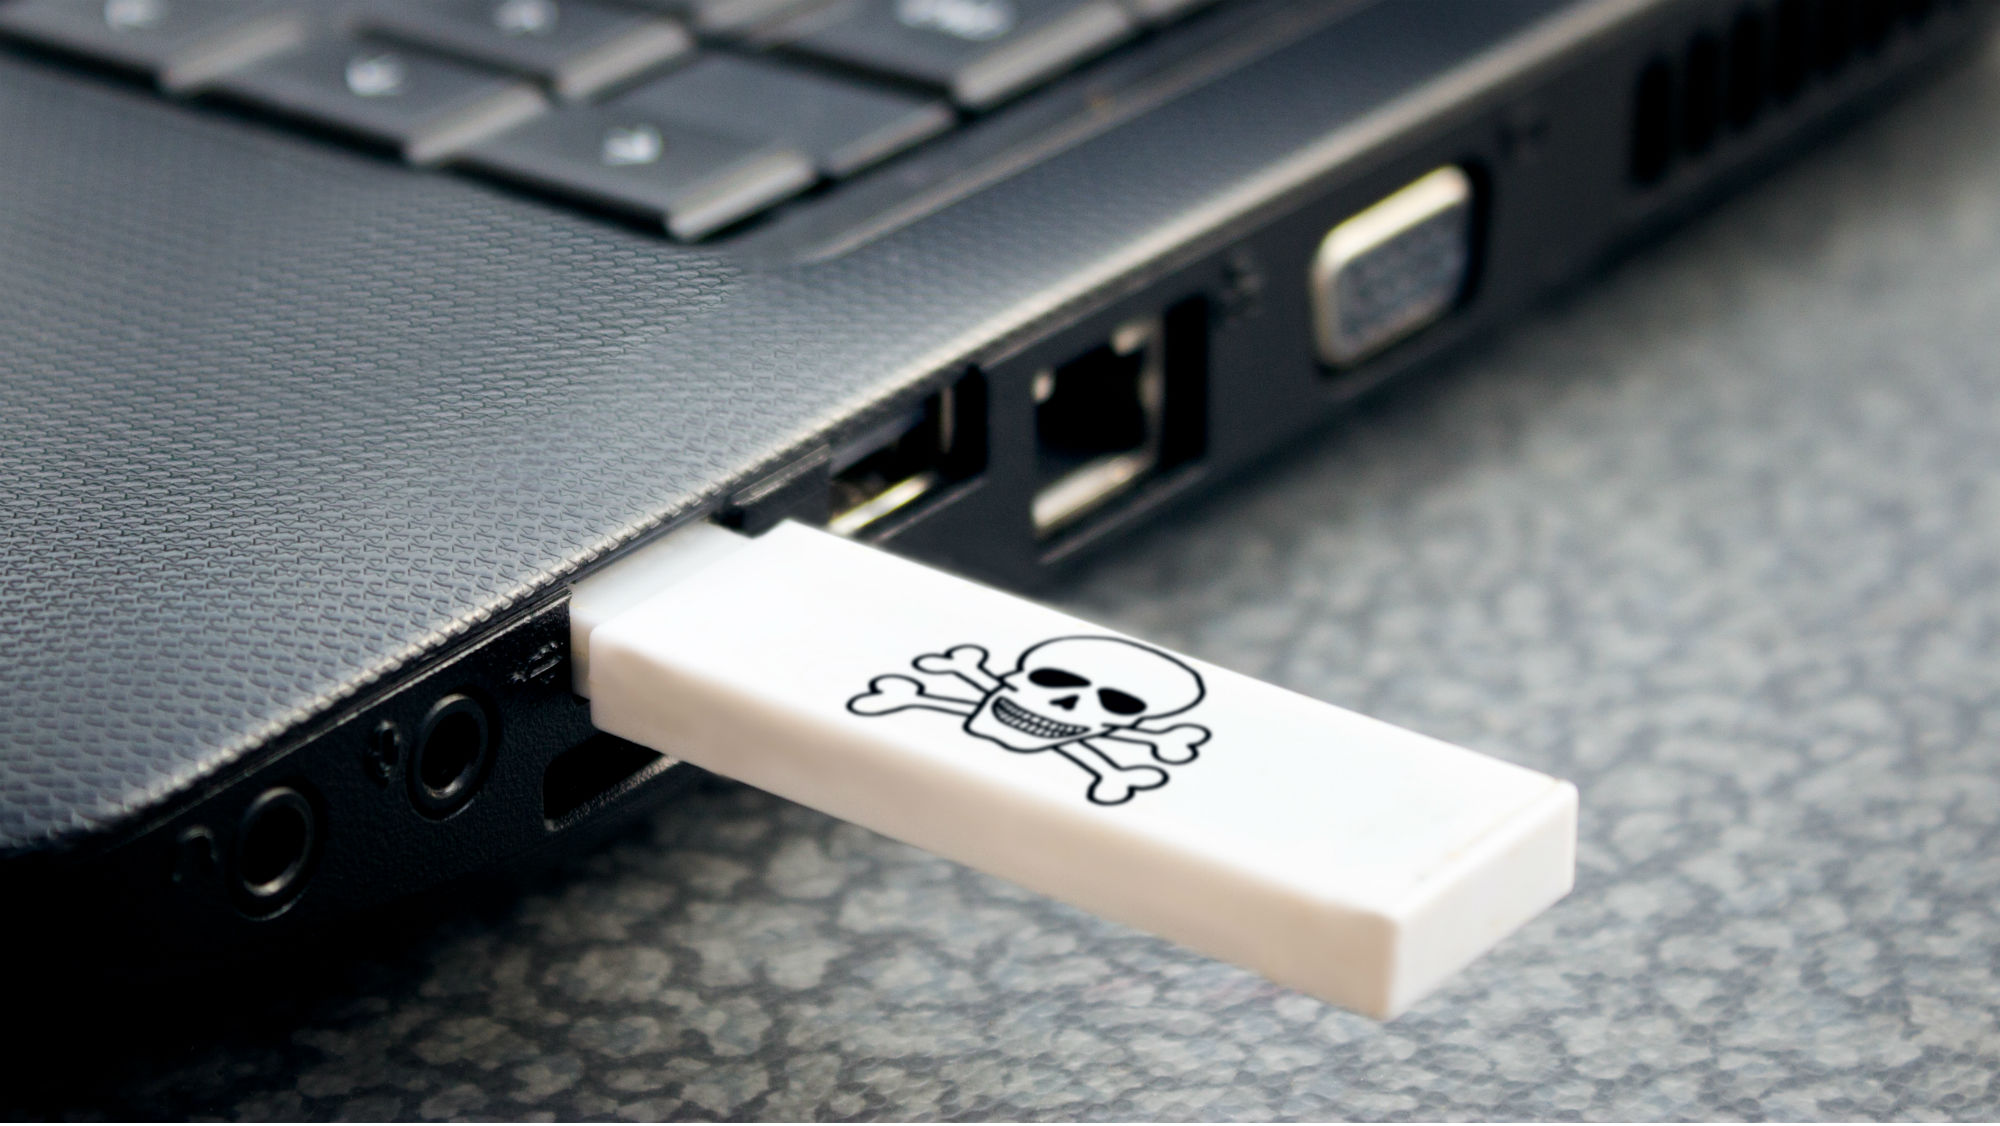 USB KILLER Perusak komputer dan leptop